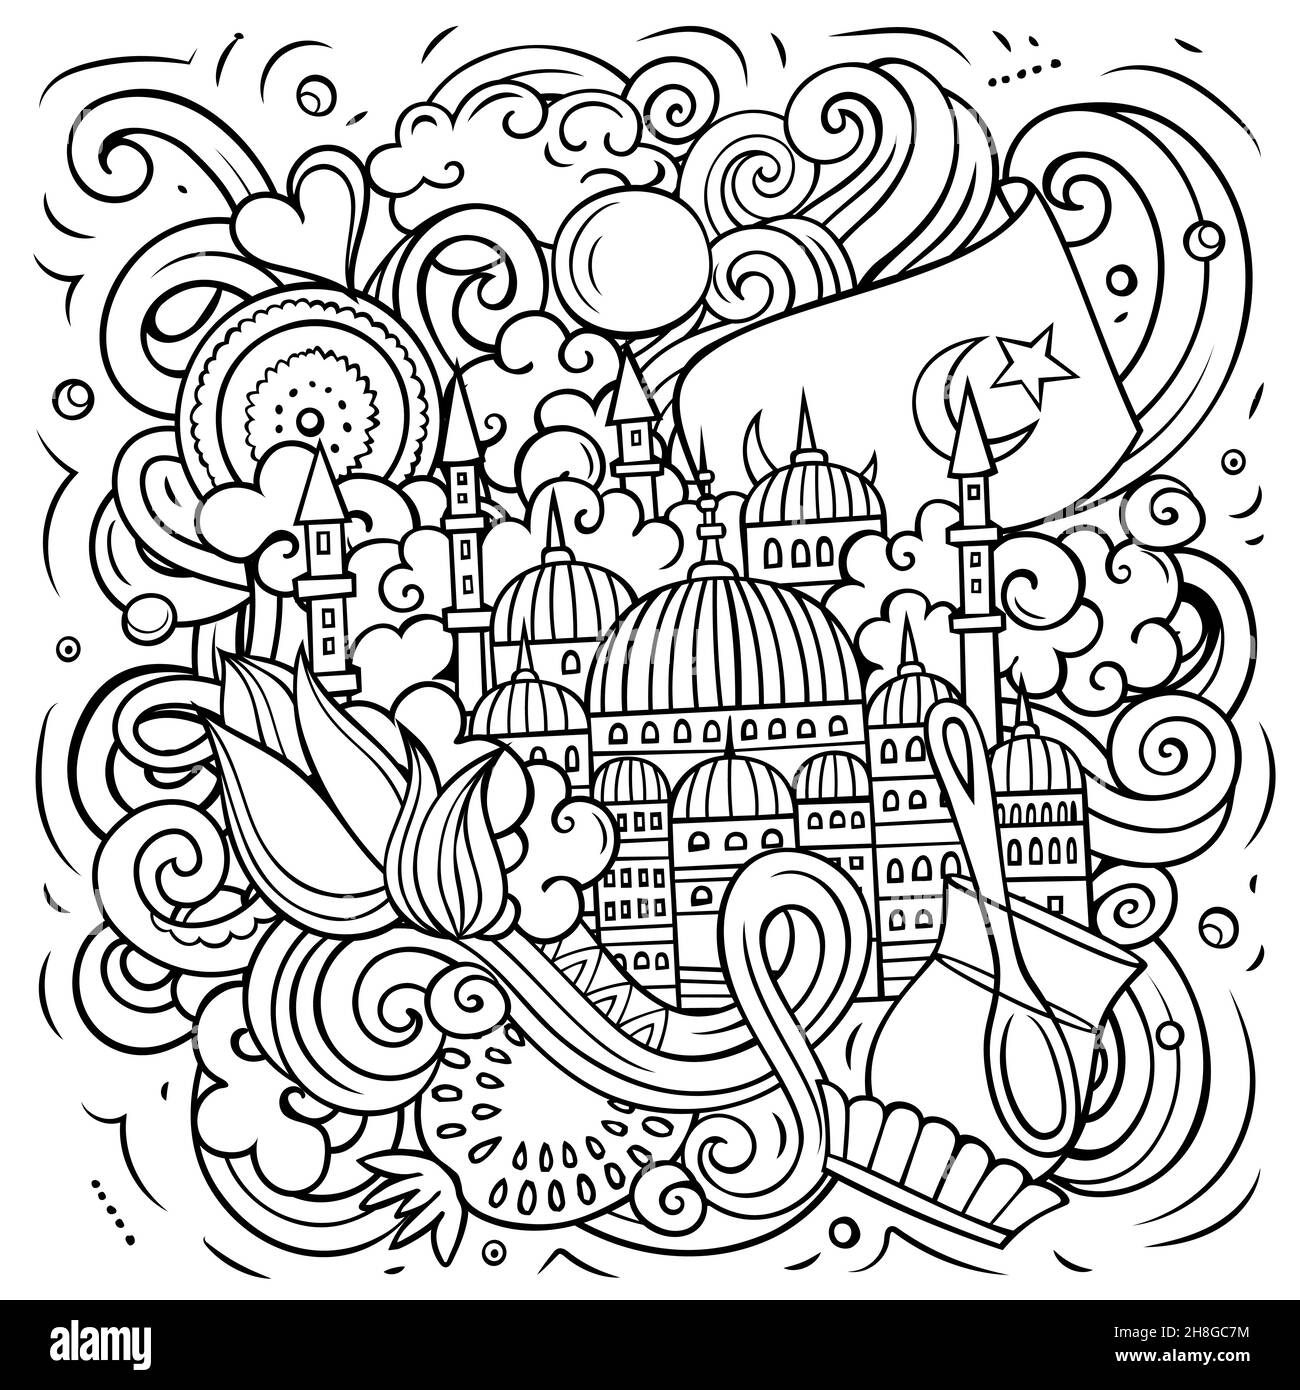 Istanbul cartoon vettore Doodle illustrazione. Composizione dettagliata di schizzo con molti oggetti e simboli turchi. Illustrazione Vettoriale